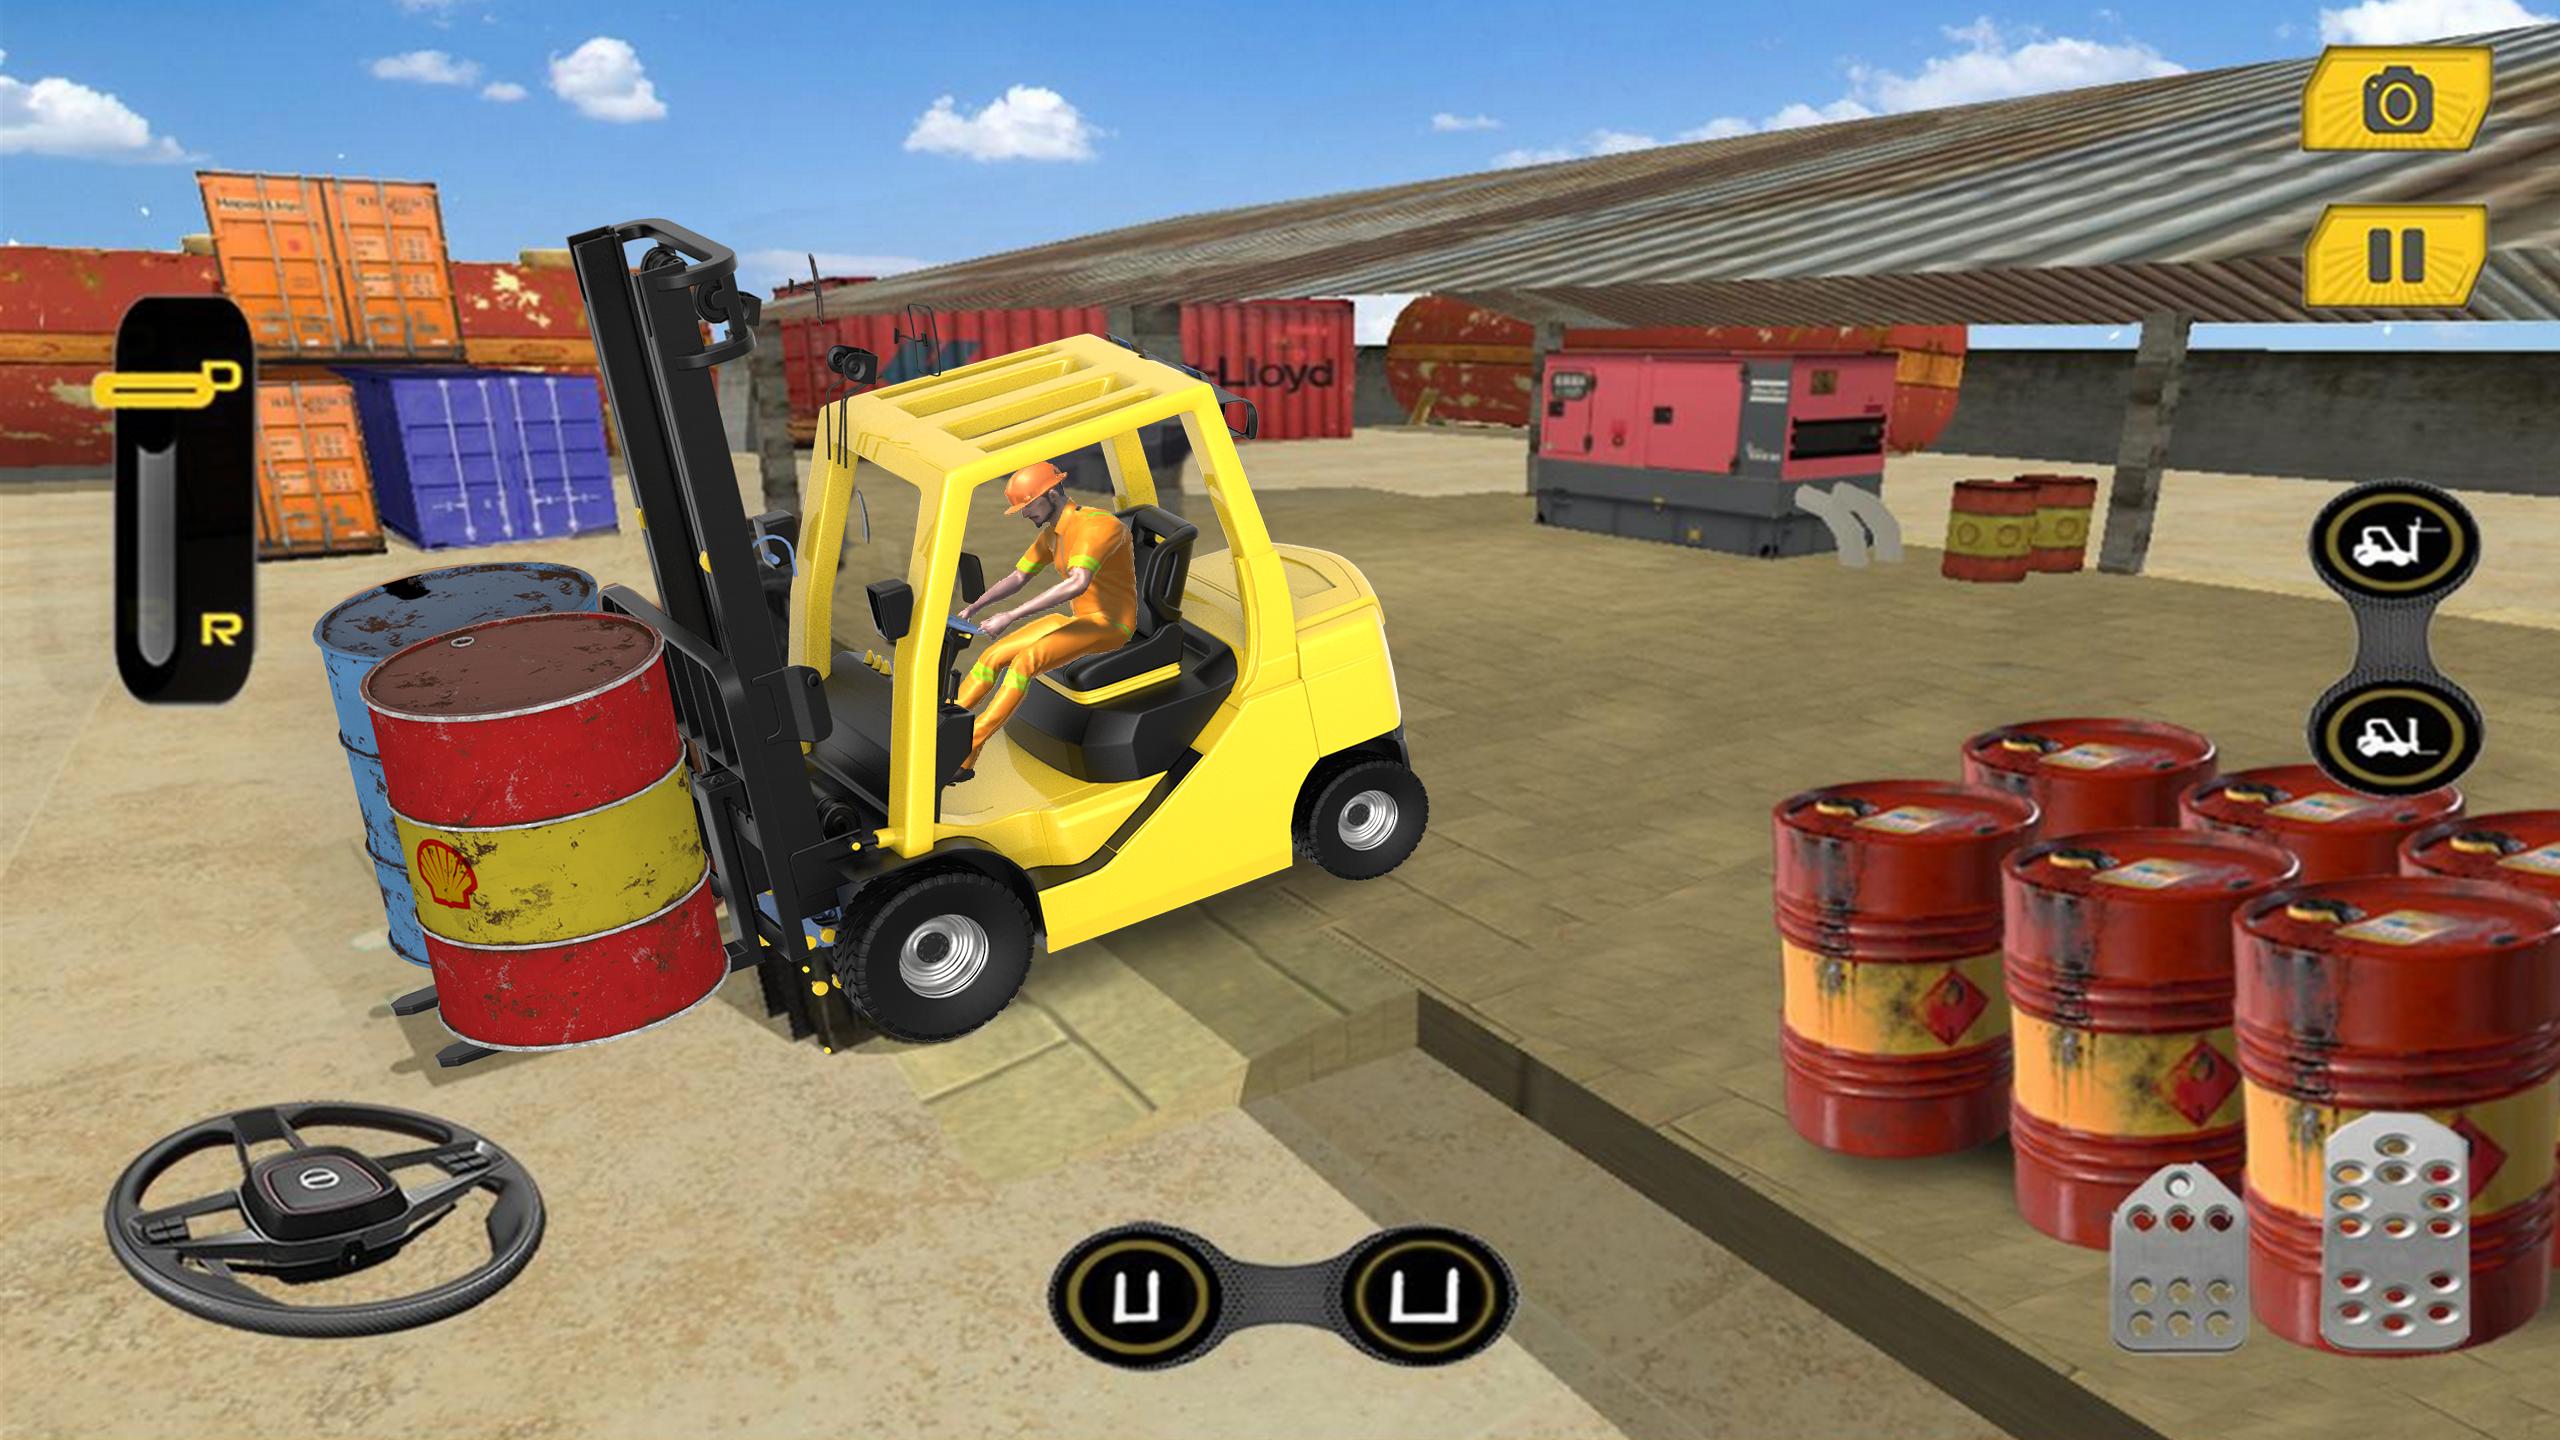 Real Forklift Simulator 2019: Cargo Forklift Games 3.1 Screenshot 12